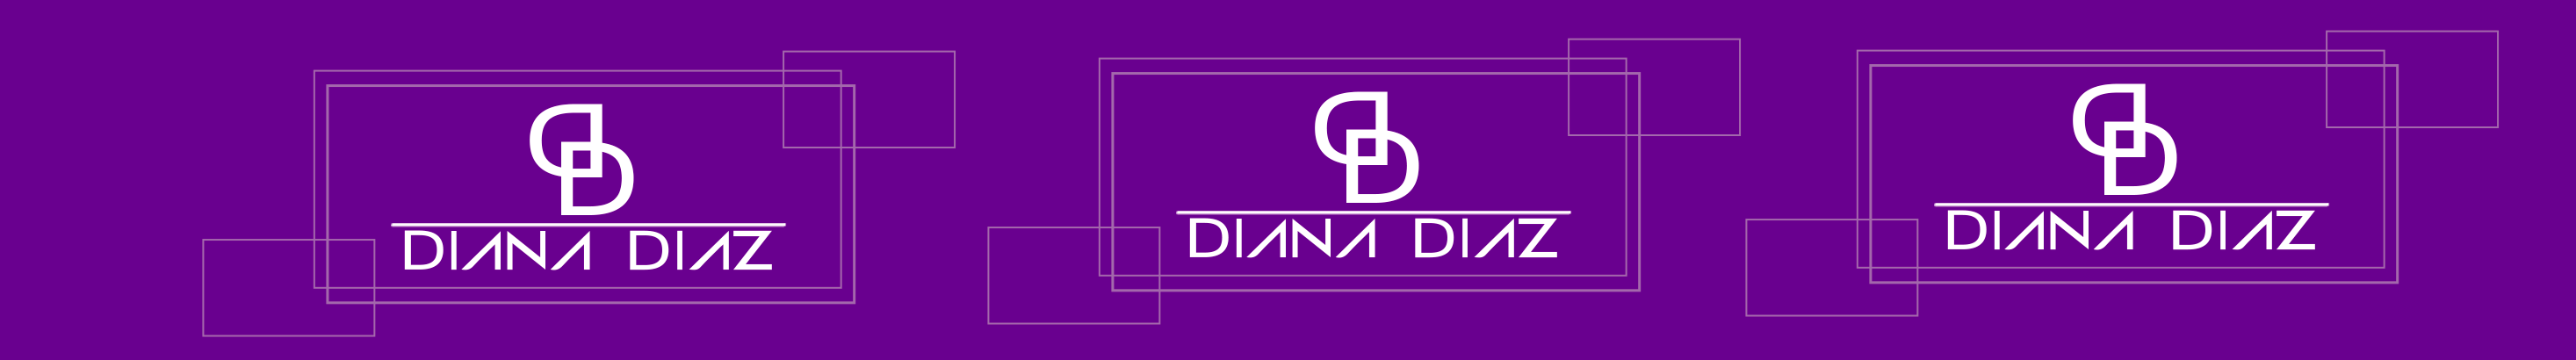 Diana Sirley Diáz Trujillo's profile banner